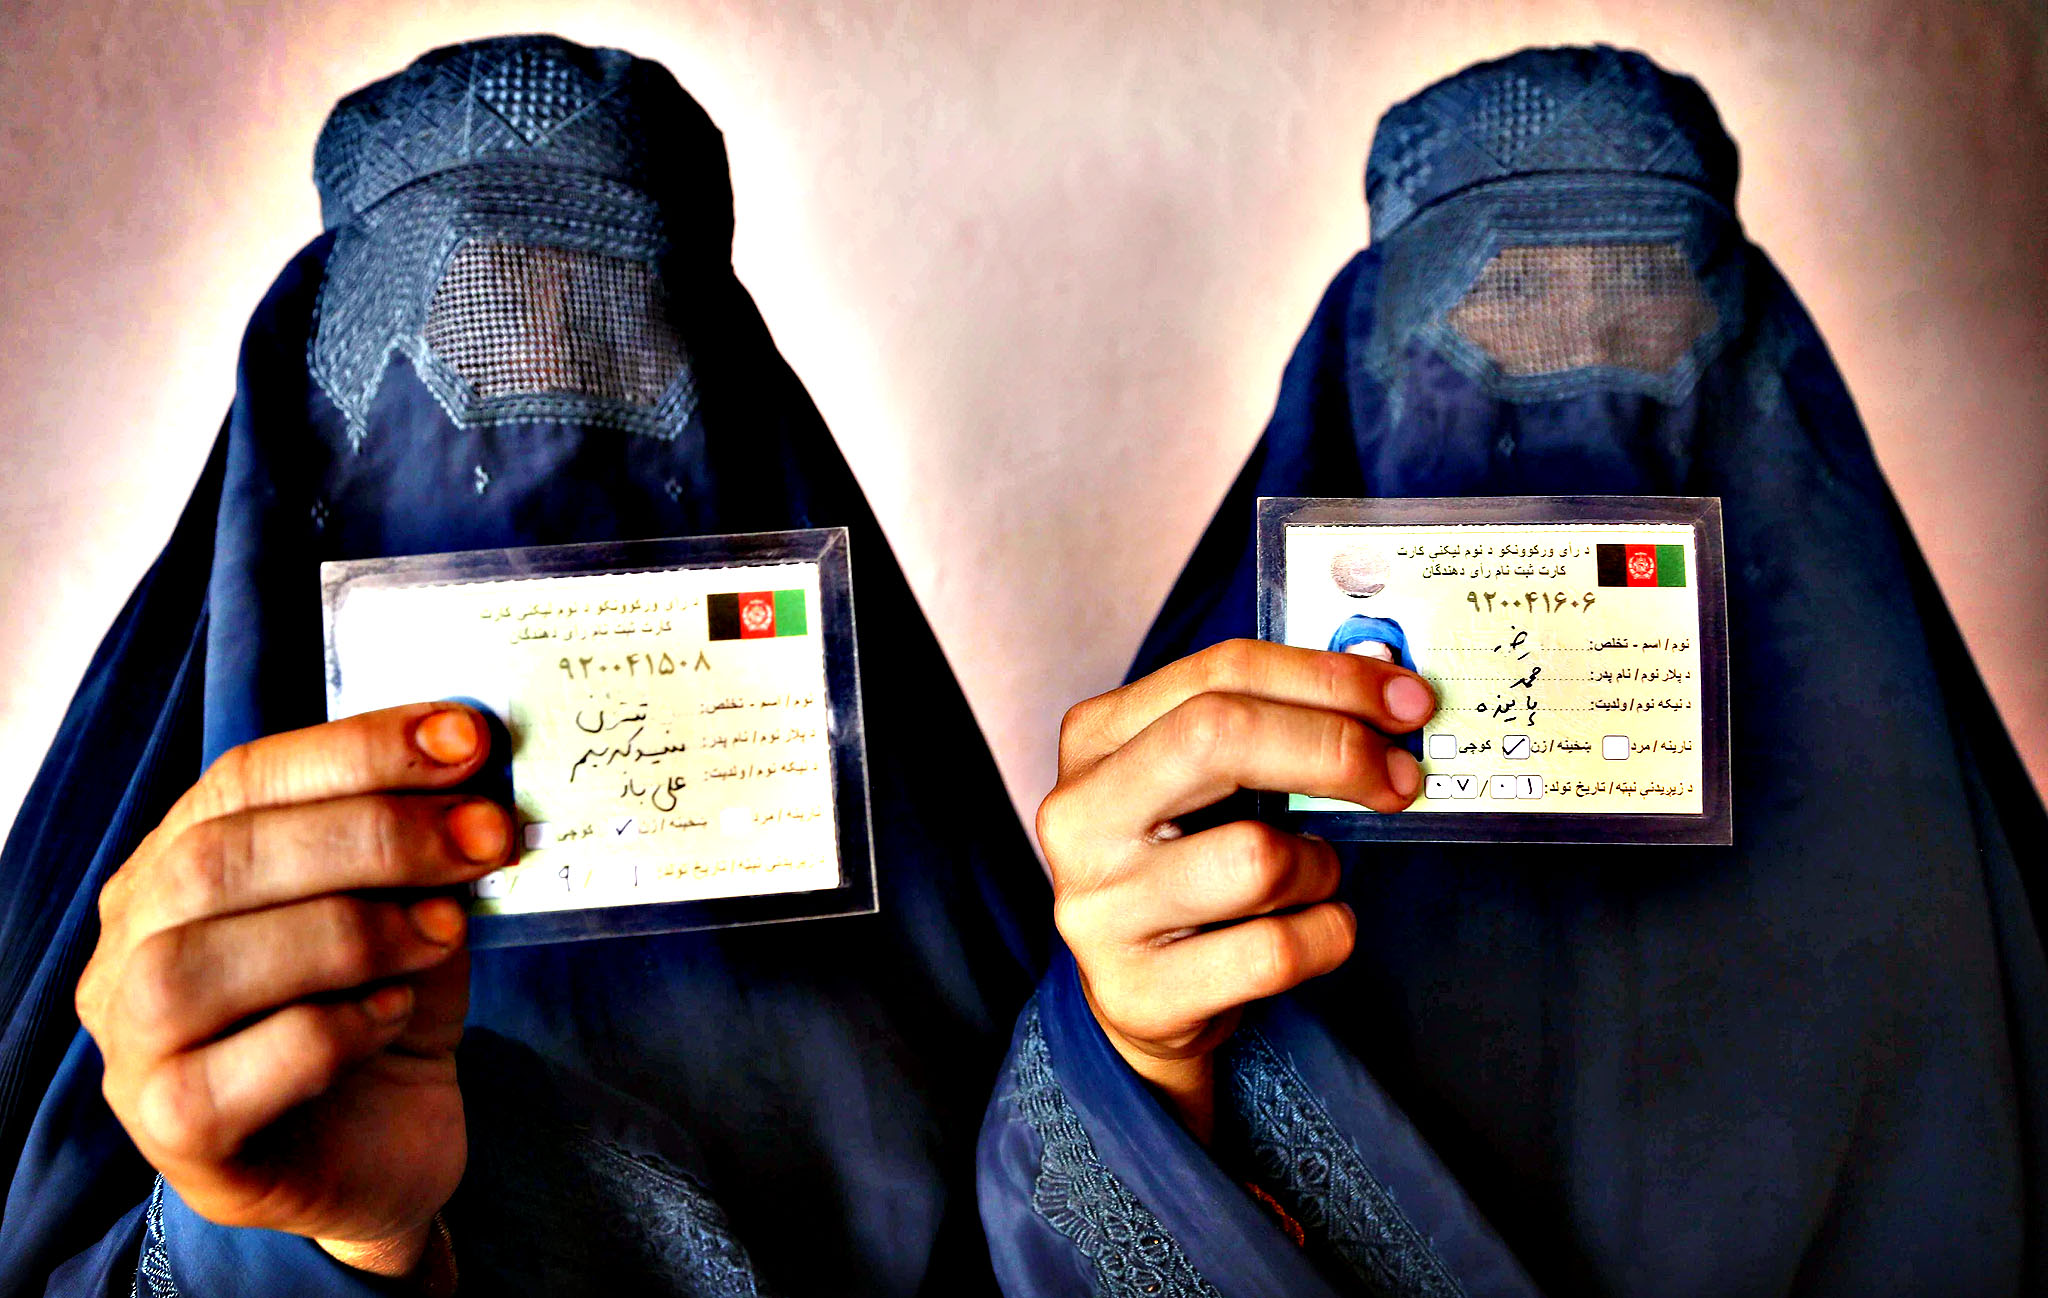 وال ستریت ژورنال: افغان ها به سوی دموکراسی گام برداشتند